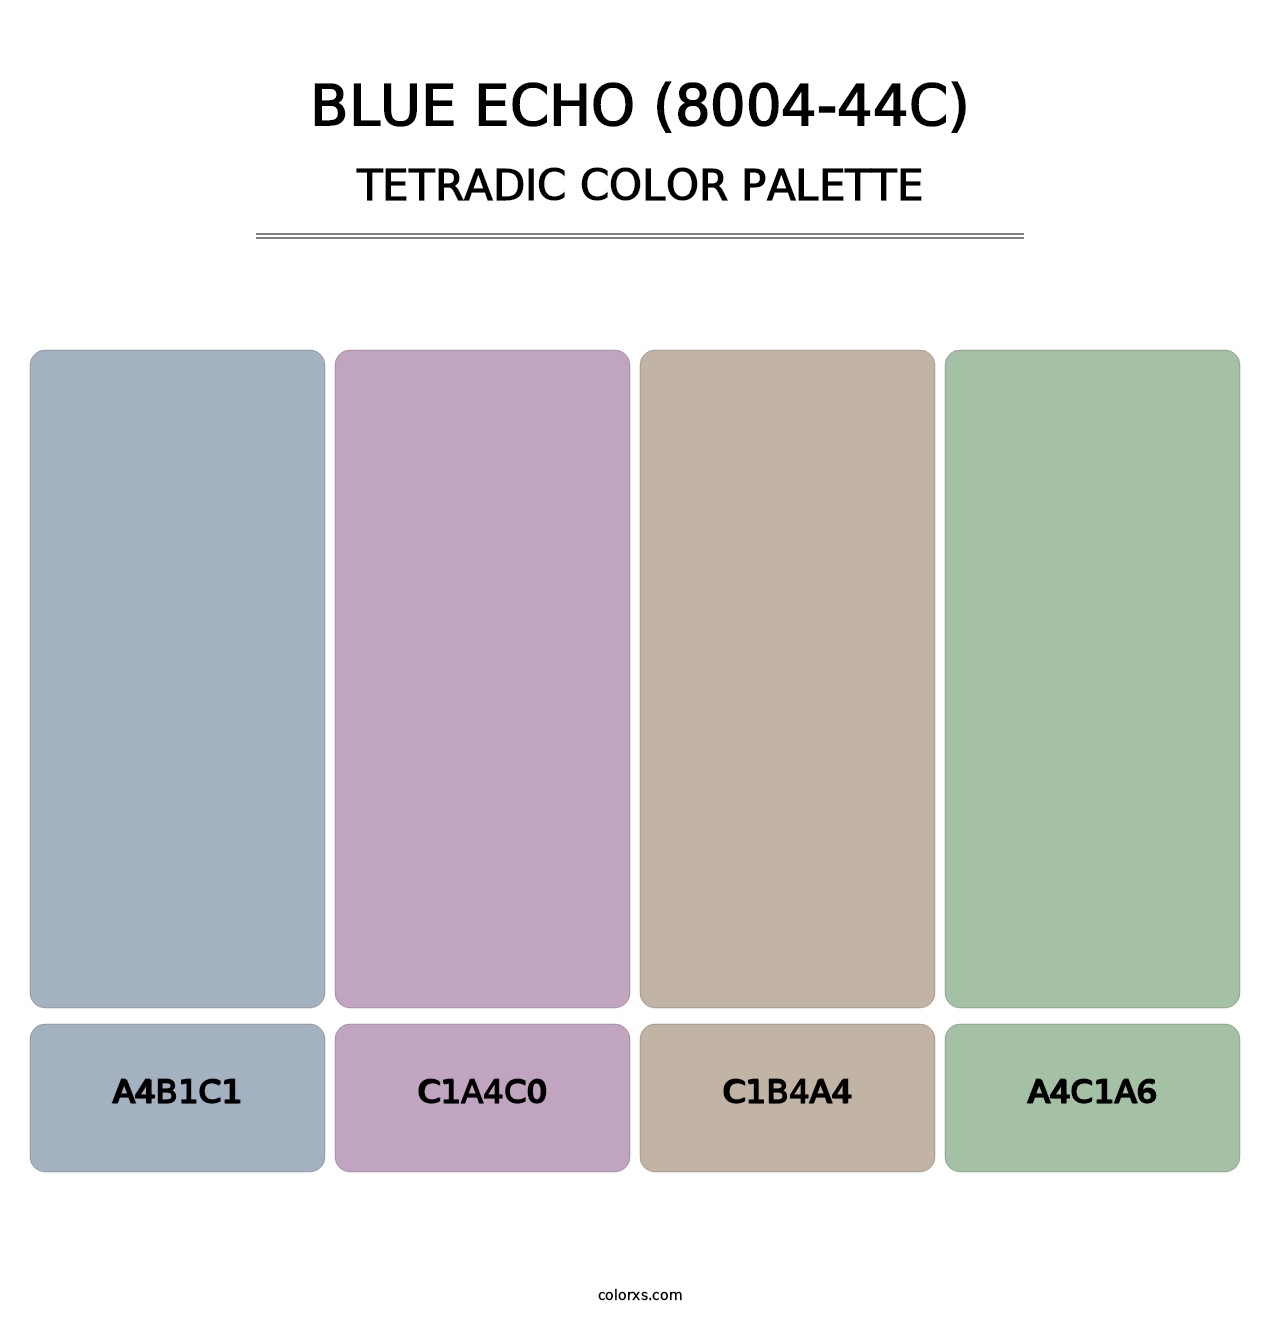 Blue Echo (8004-44C) - Tetradic Color Palette